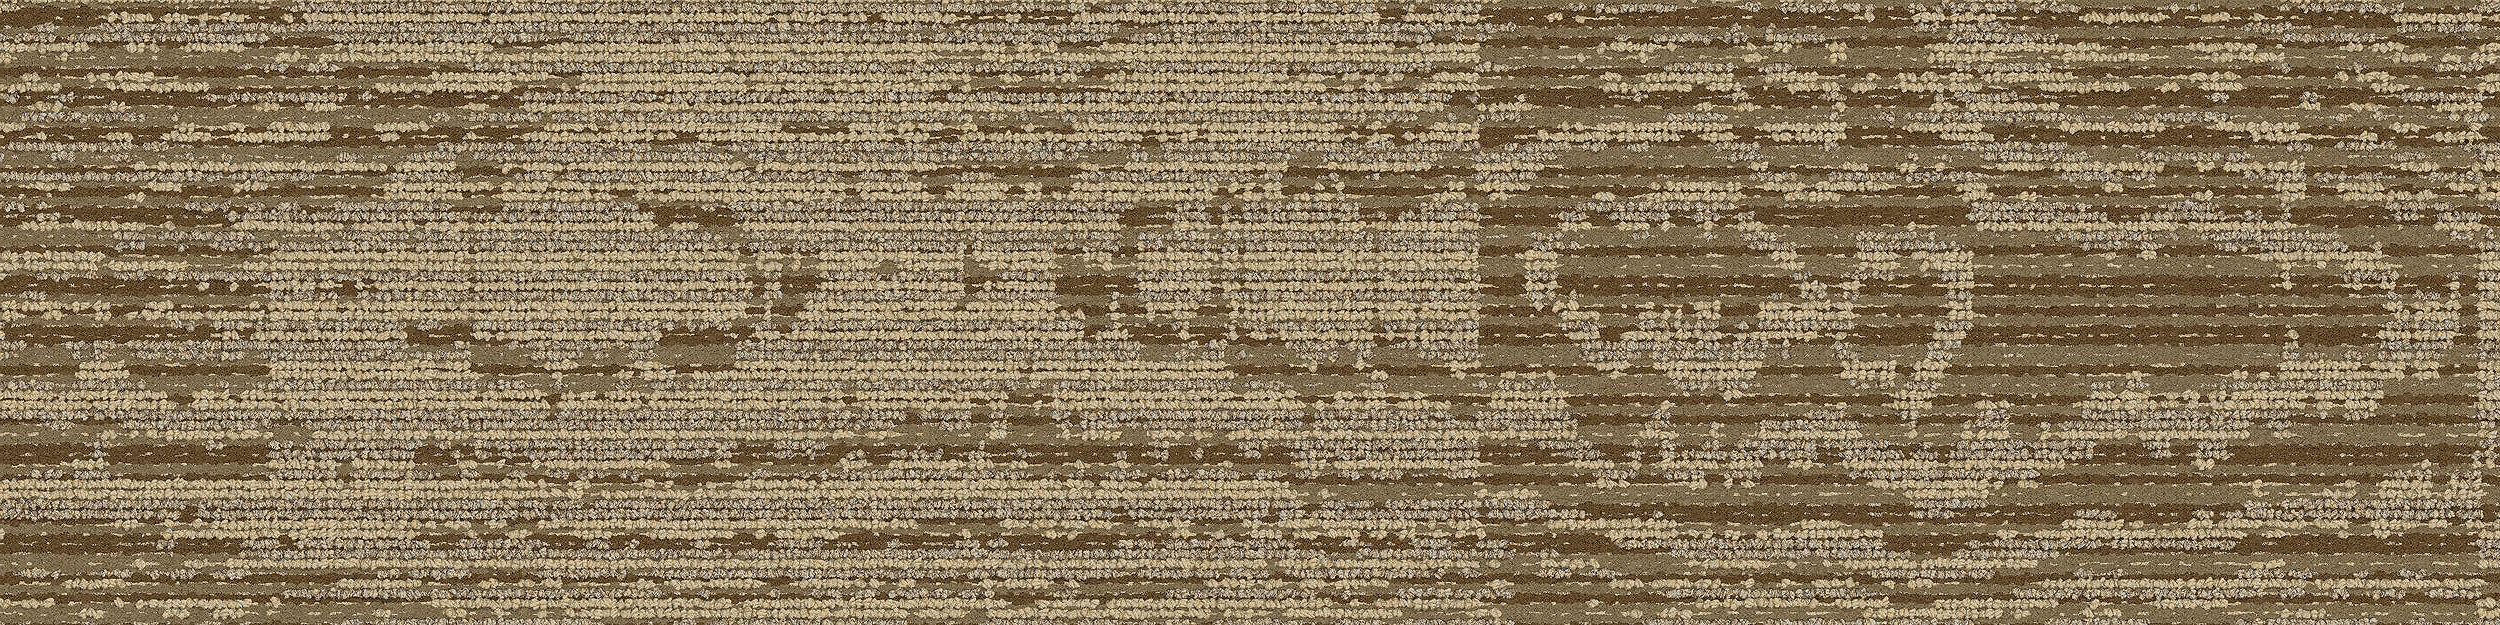 GN156 Carpet Tile In Wheat imagen número 4